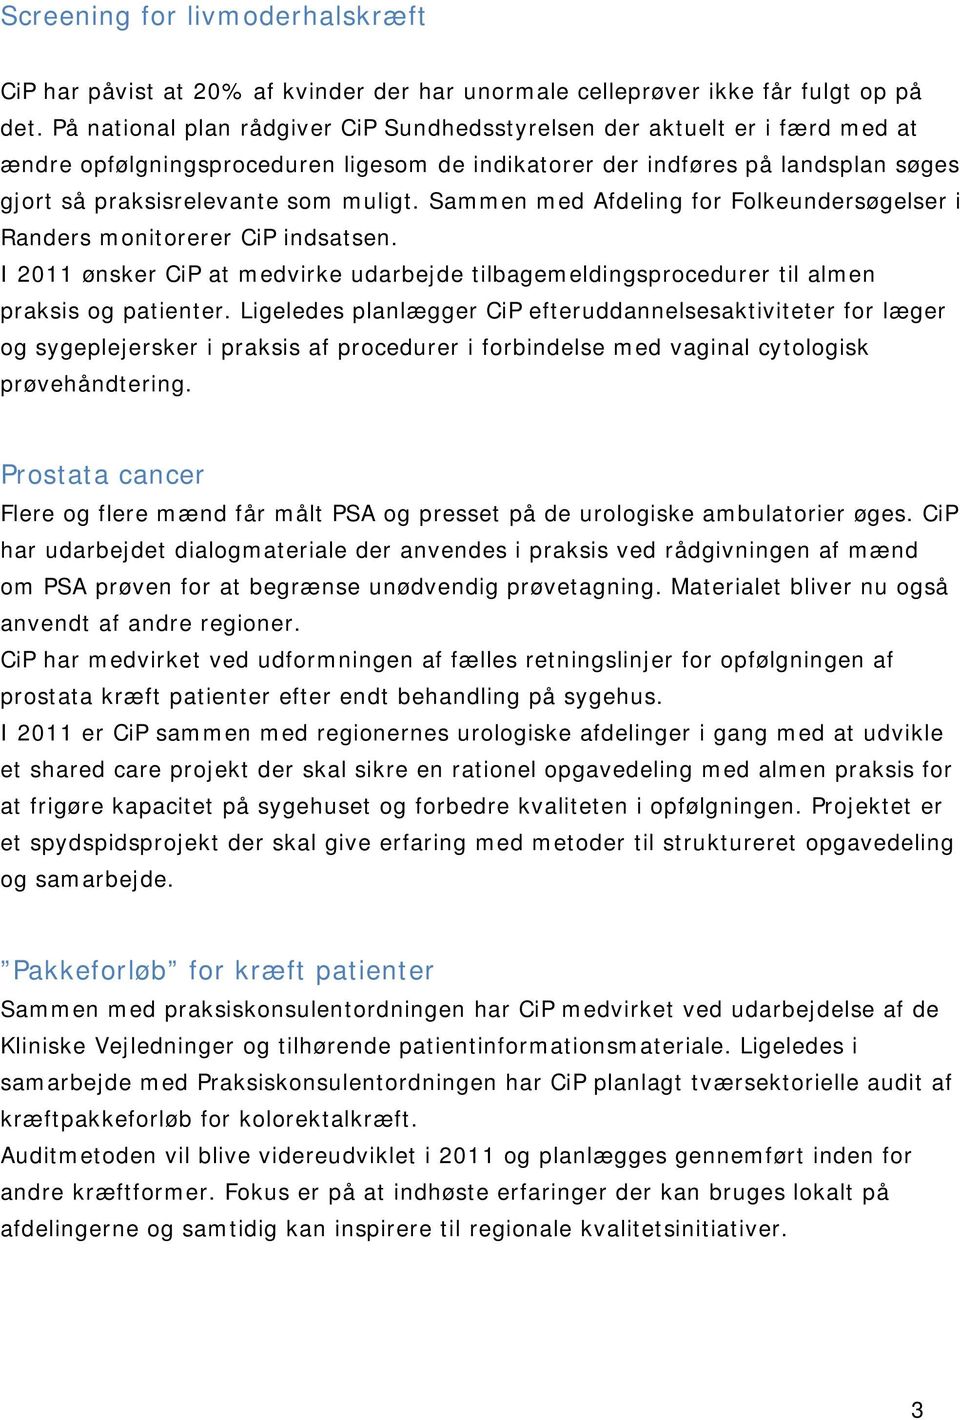 Sammen med Afdeling for Folkeundersøgelser i Randers monitorerer CiP indsatsen. I 2011 ønsker CiP at medvirke udarbejde tilbagemeldingsprocedurer til almen praksis og patienter.